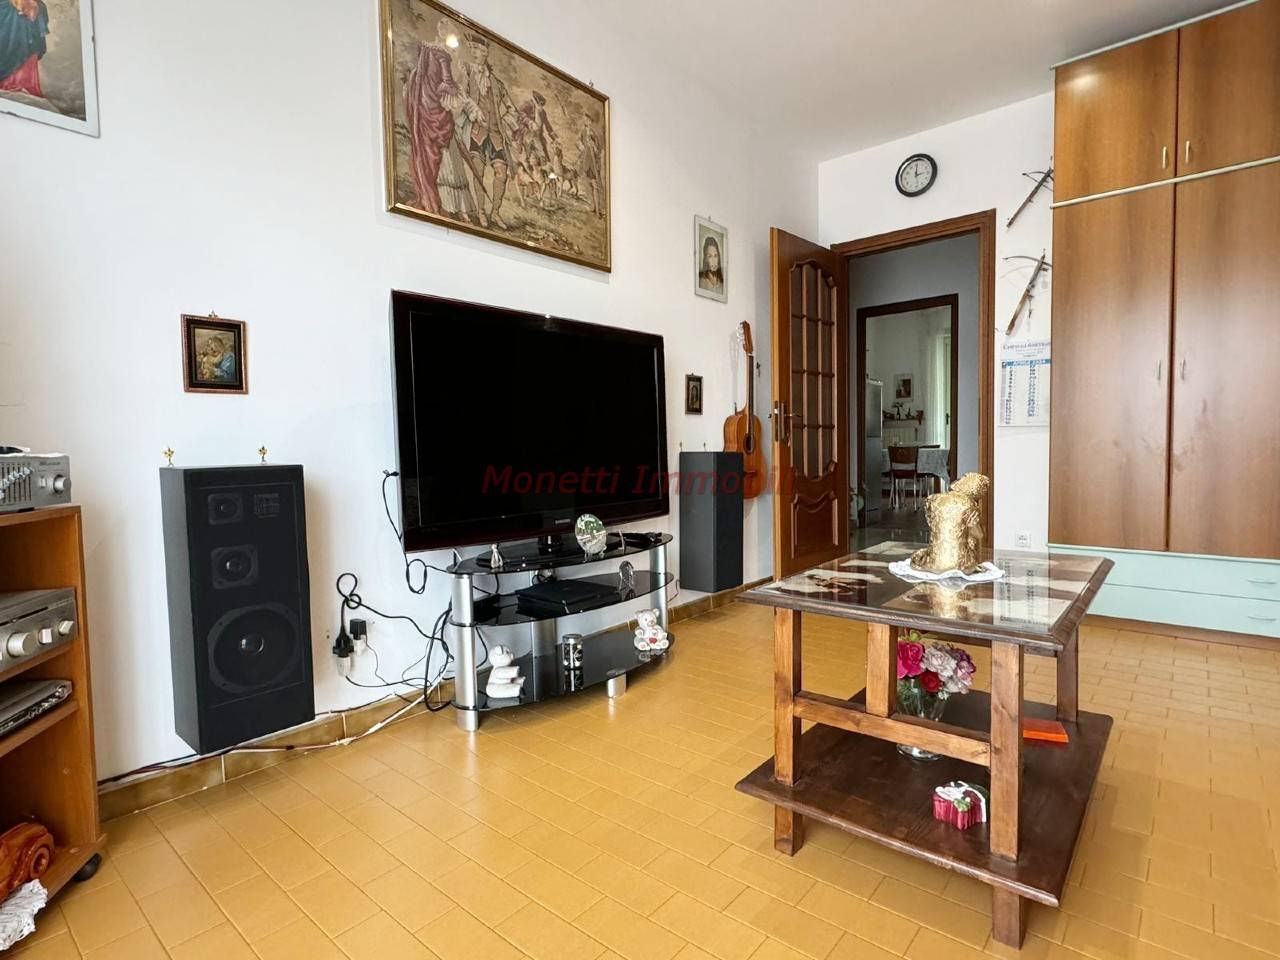 Appartamento in vendita a Airasca, 3 locali, prezzo € 77.000 | PortaleAgenzieImmobiliari.it